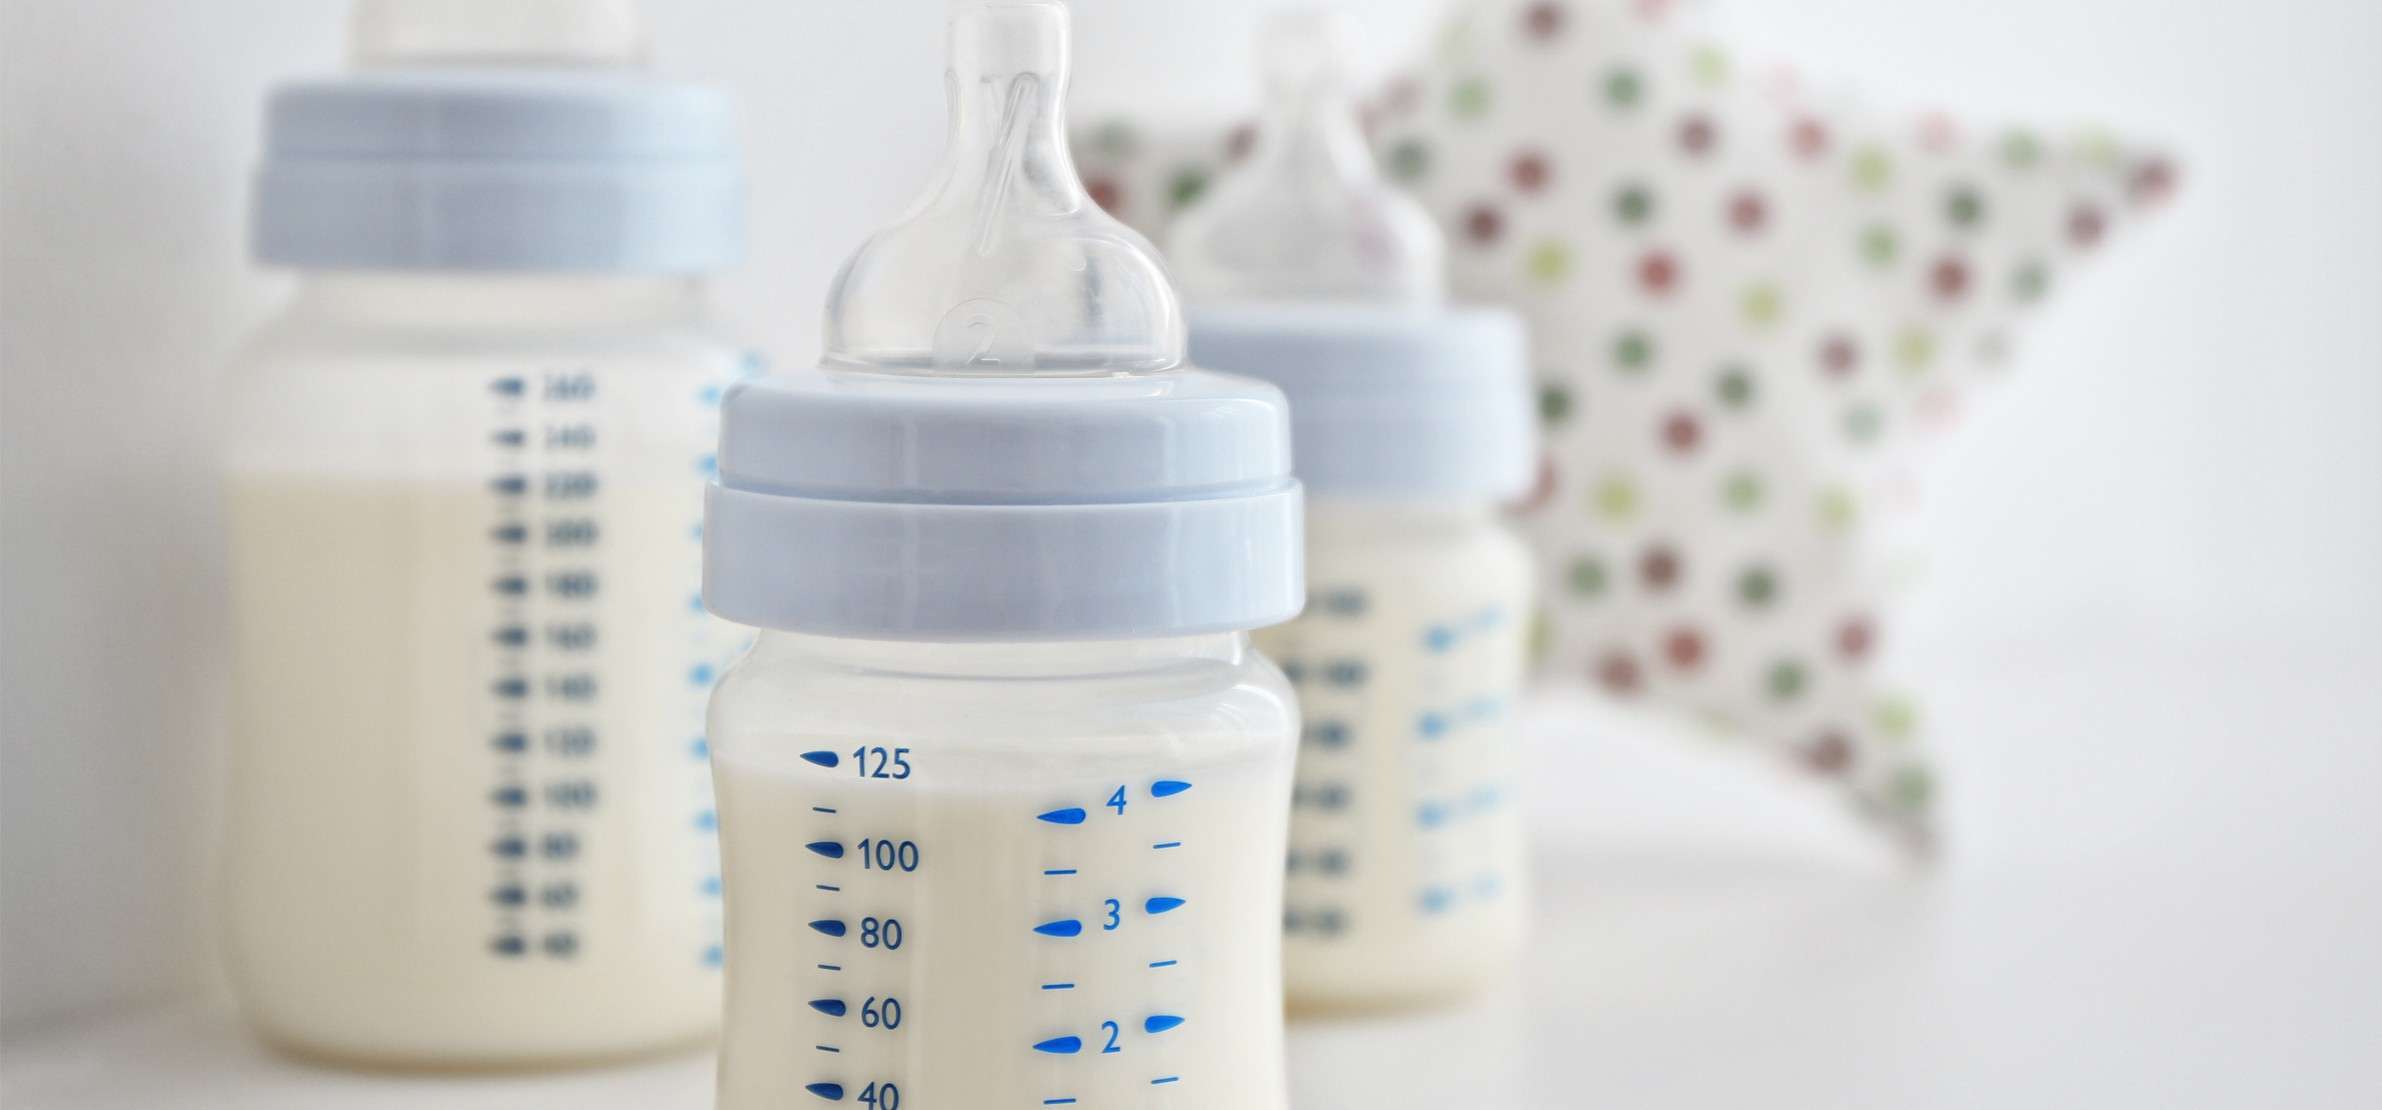 Conserver le lait maternel : durée et méthodes recommandées - Le